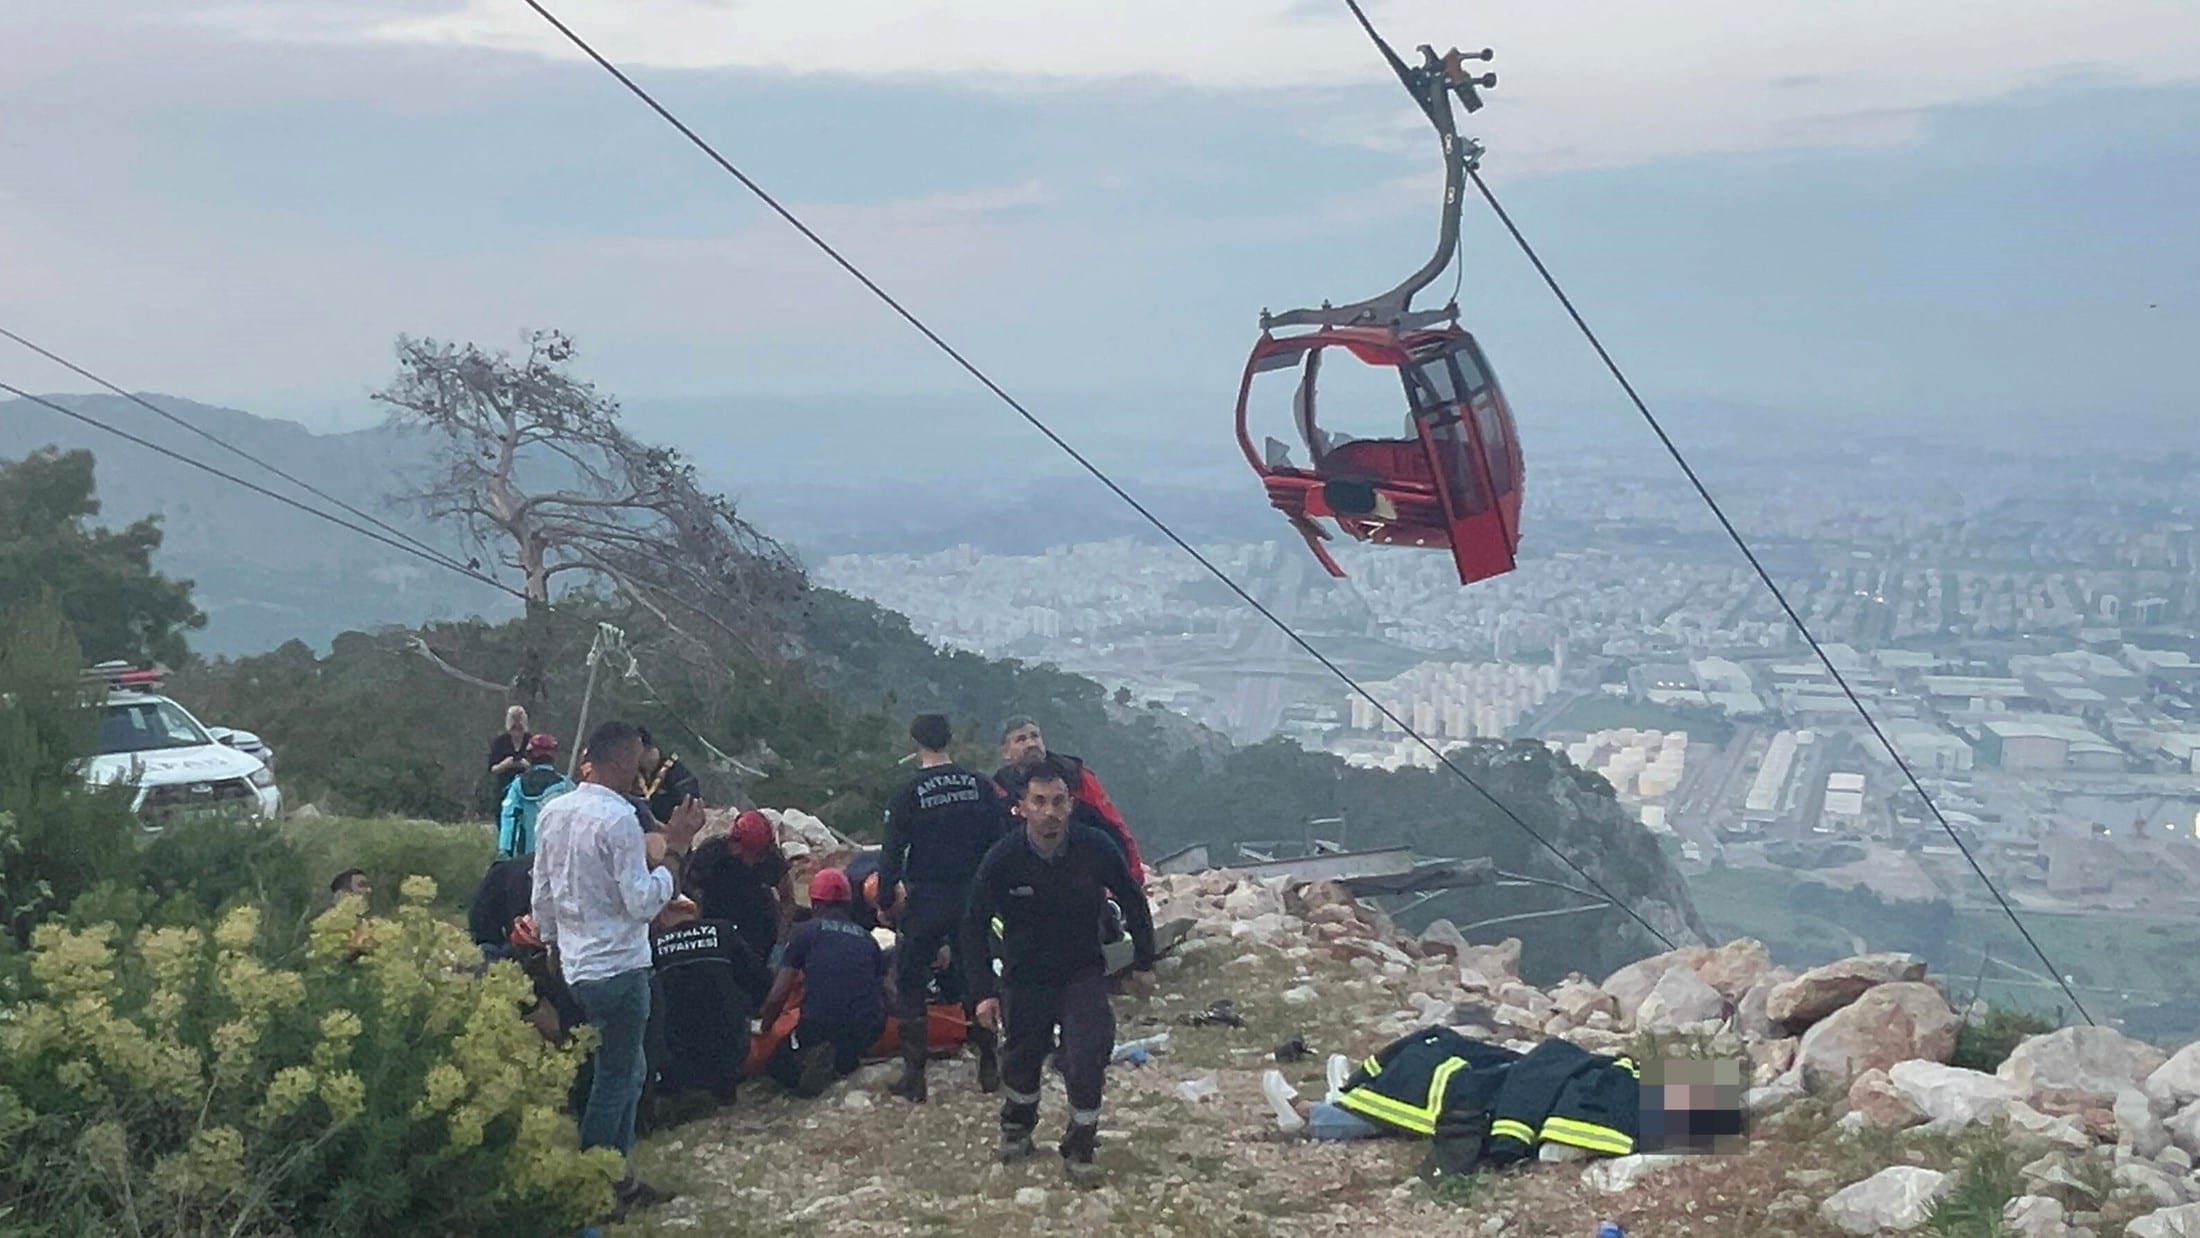 Ölü, on yaralı - Antalya'da teleferik kabini kaza yaptı | krone.at